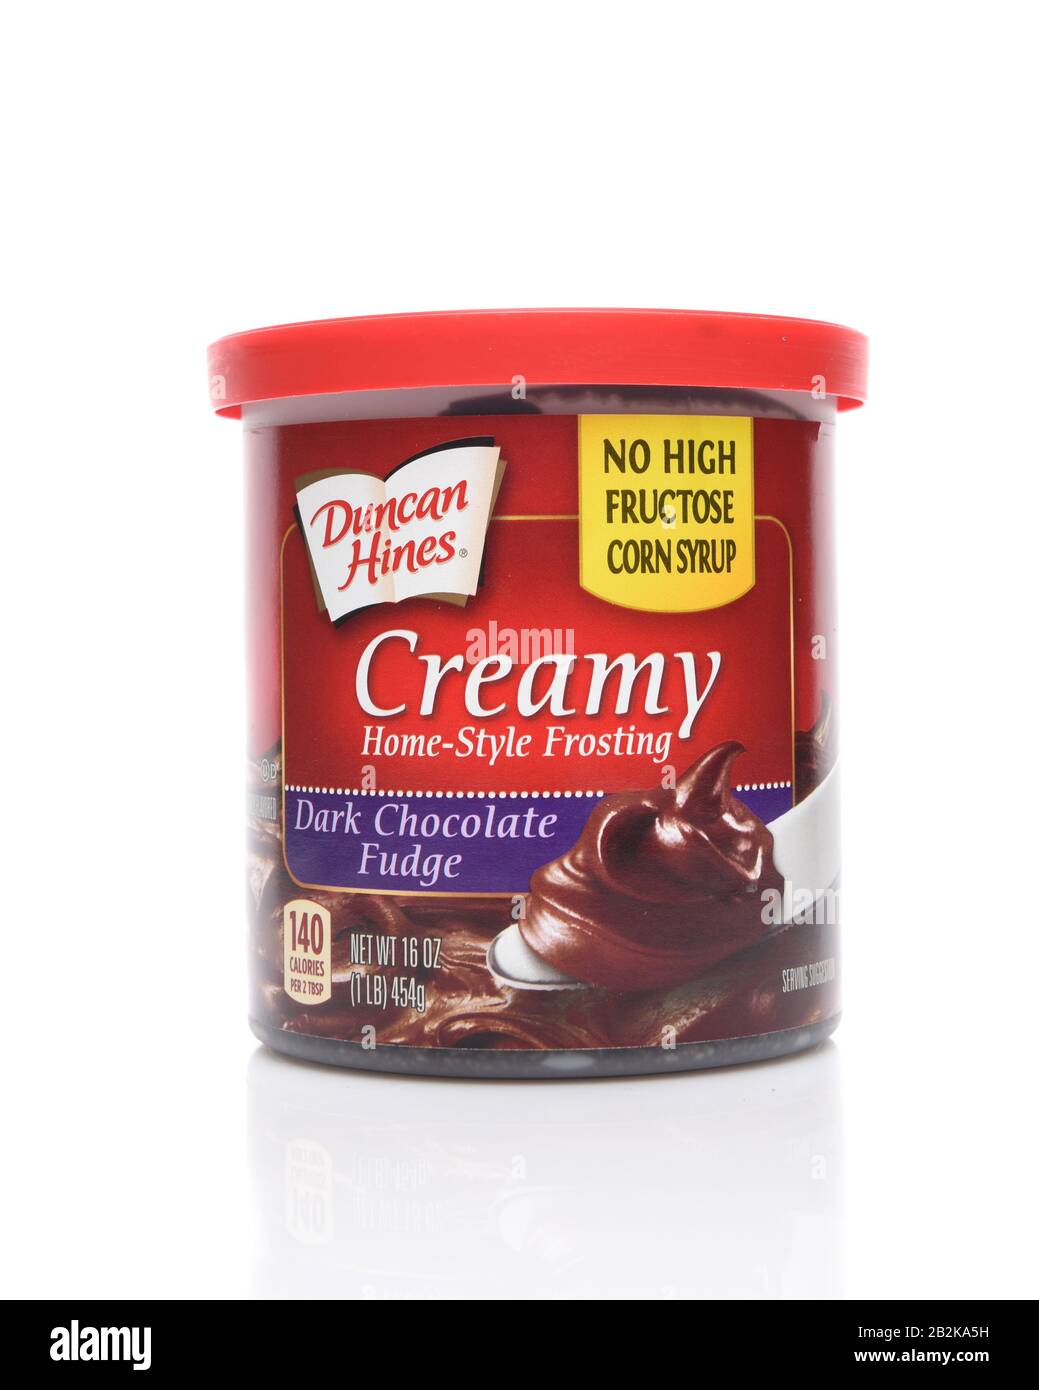 Irvine, KALIFORNIEN - 14. AUGUST 2019: Eine Wanne von Duncan Hines Dark Chocolate Fudge Creamy Home Style Frosting. Stockfoto